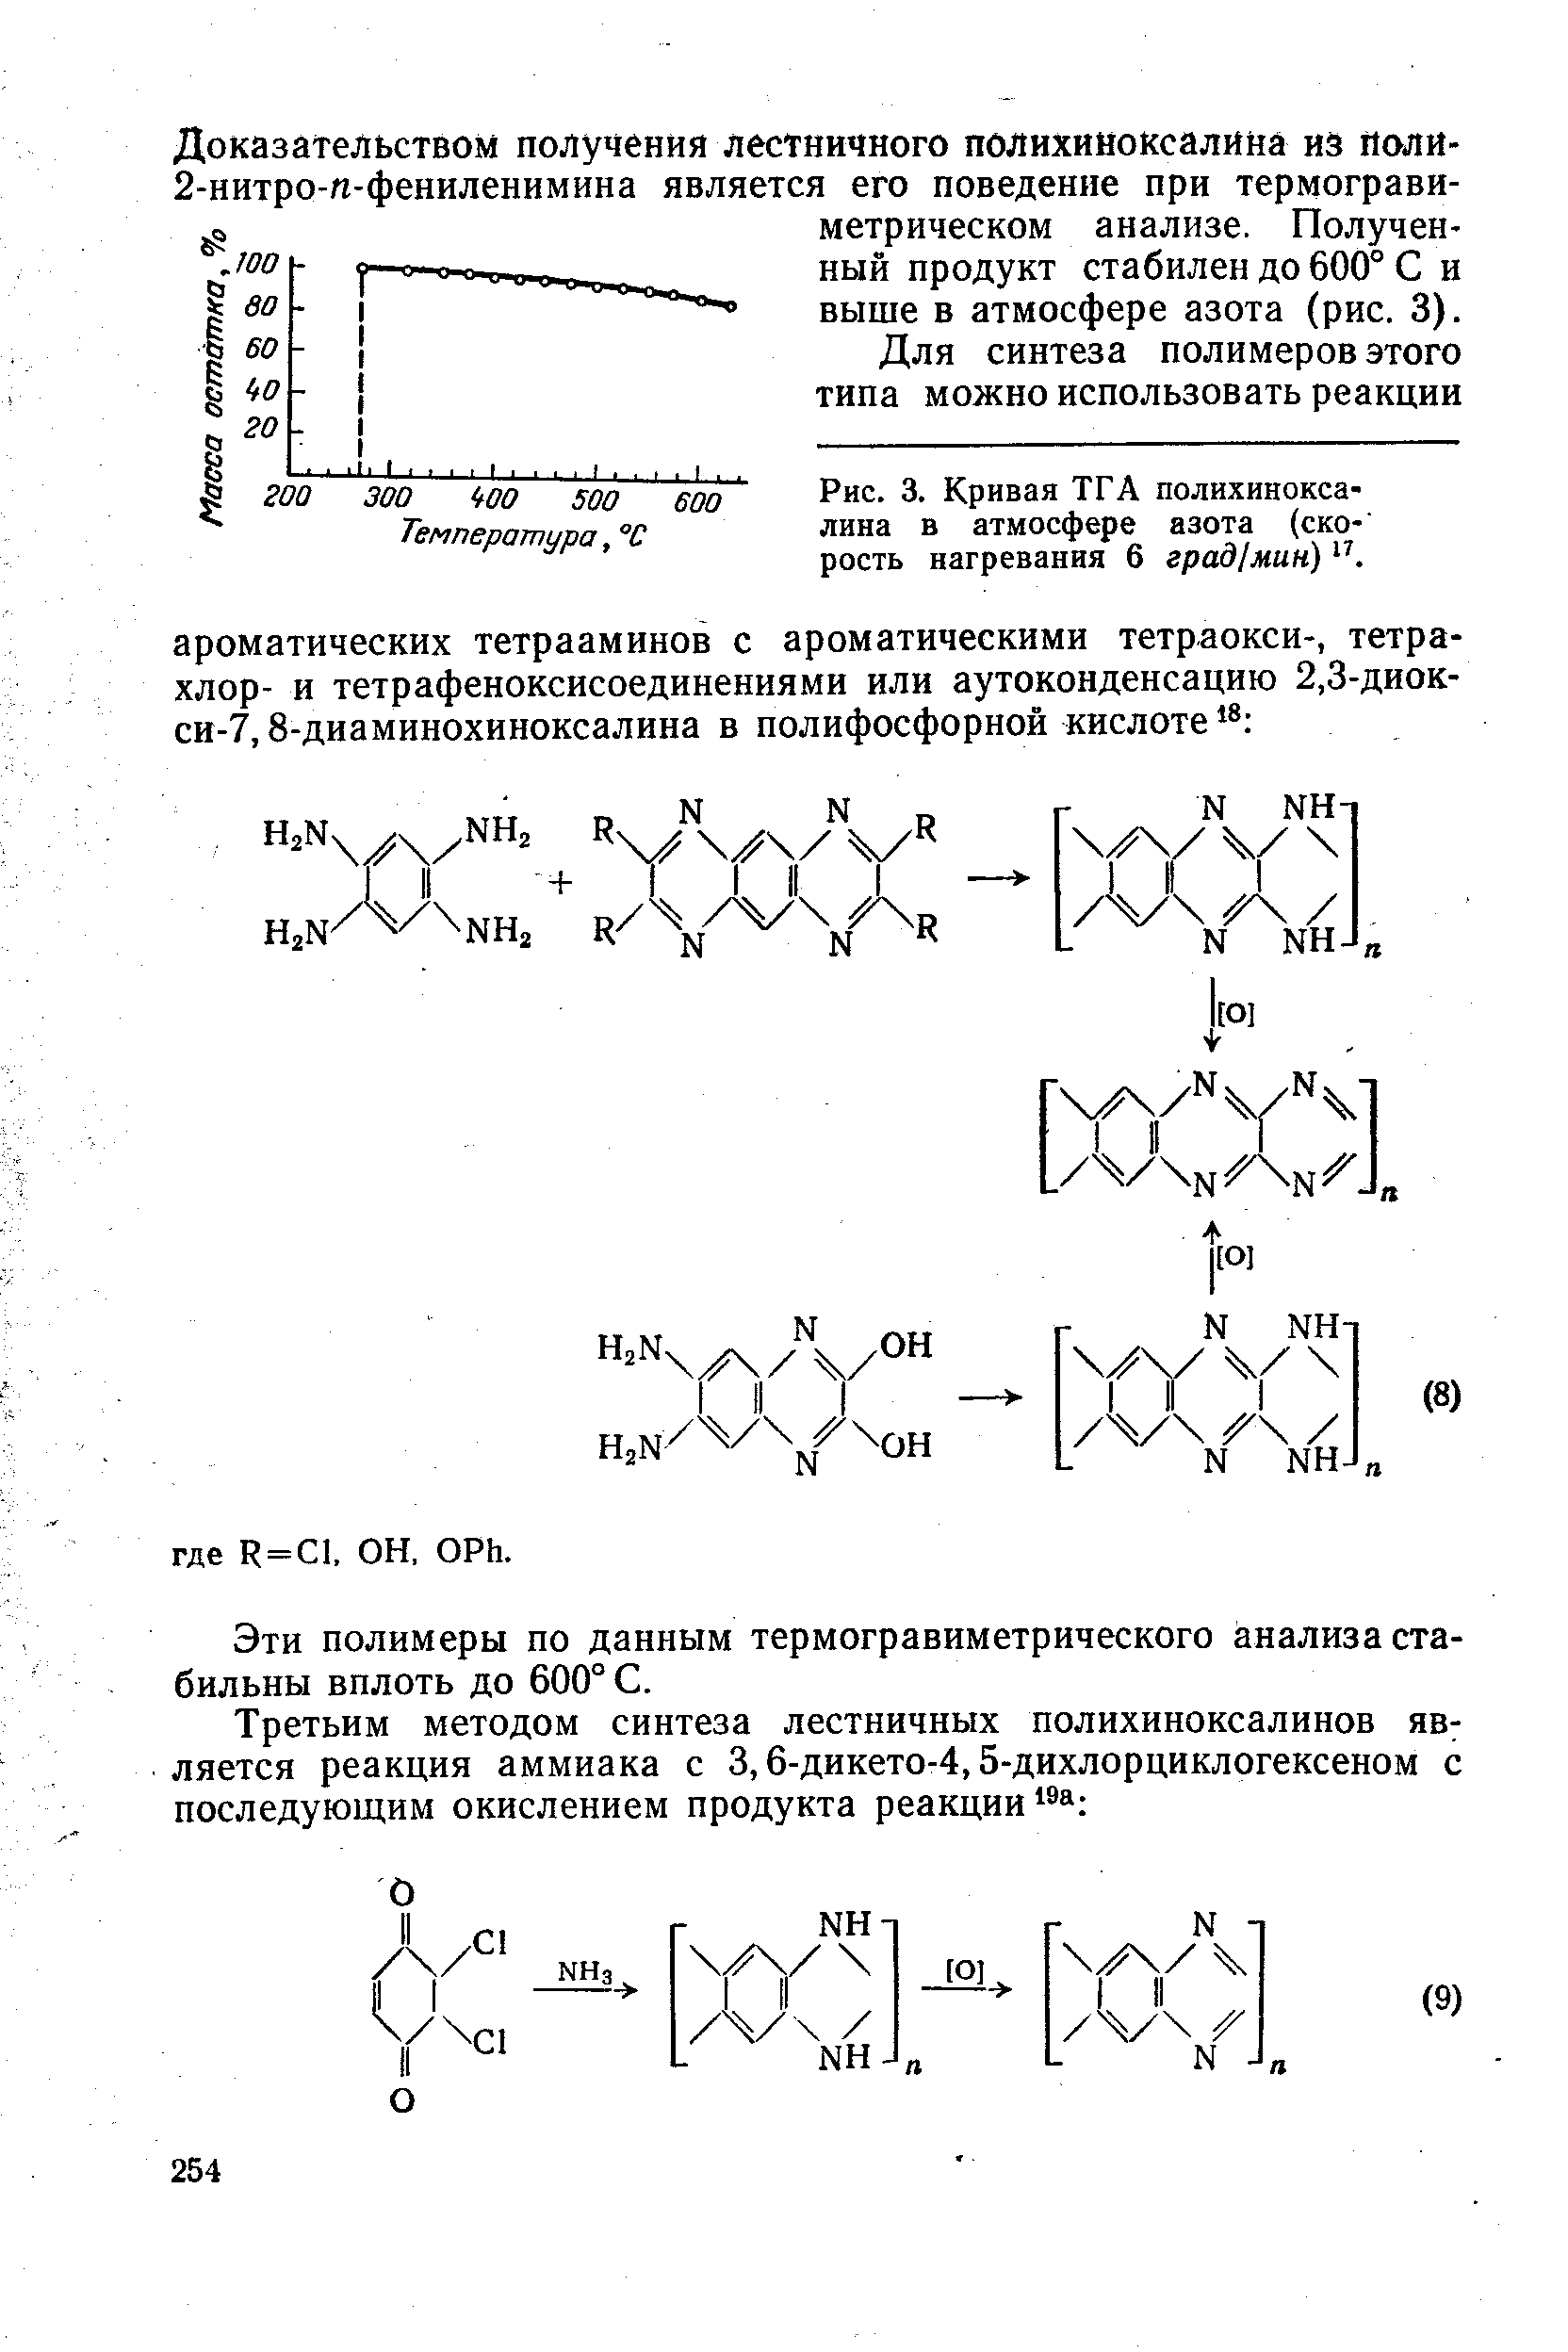 Доказательством получения лестничного полихиноксалина иа йоли-2-нитро-м-фениленимина является его поведение при термогравиметрическом анализе. Полученный продукт стабилен до 600° С и выше в атмосфере азота (рис. 3).